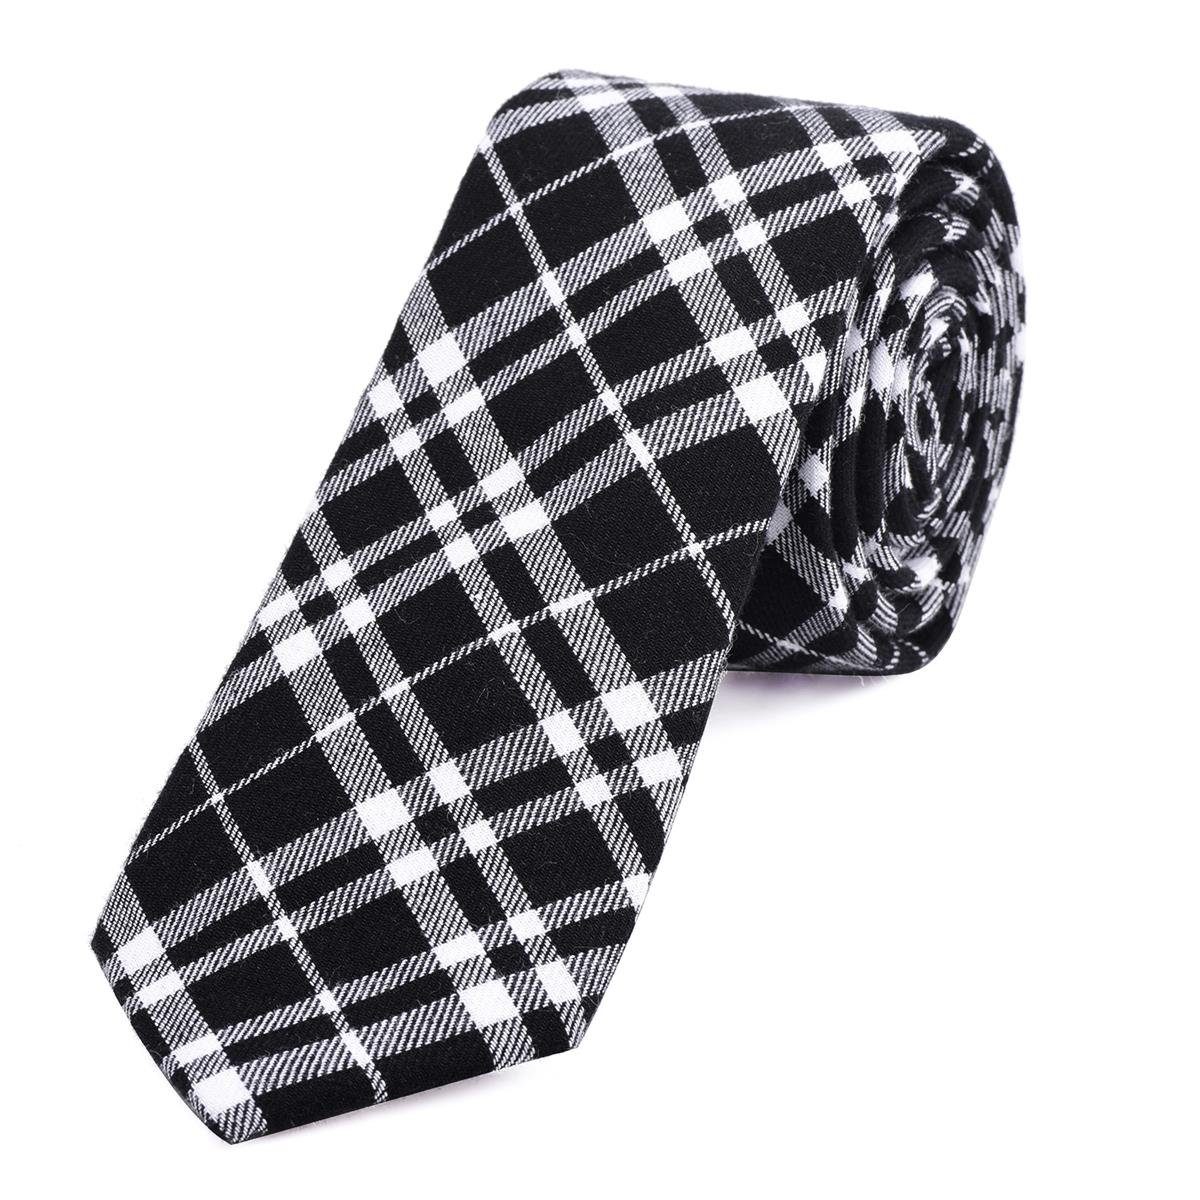 DonDon Krawatte Herren Krawatte 6 cm mit Karos oder Streifen (Packung, 1-St., 1x Krawatte) Baumwolle, kariert oder gestreift, für Büro oder festliche Veranstaltungen schwarz-weiß kariert 2